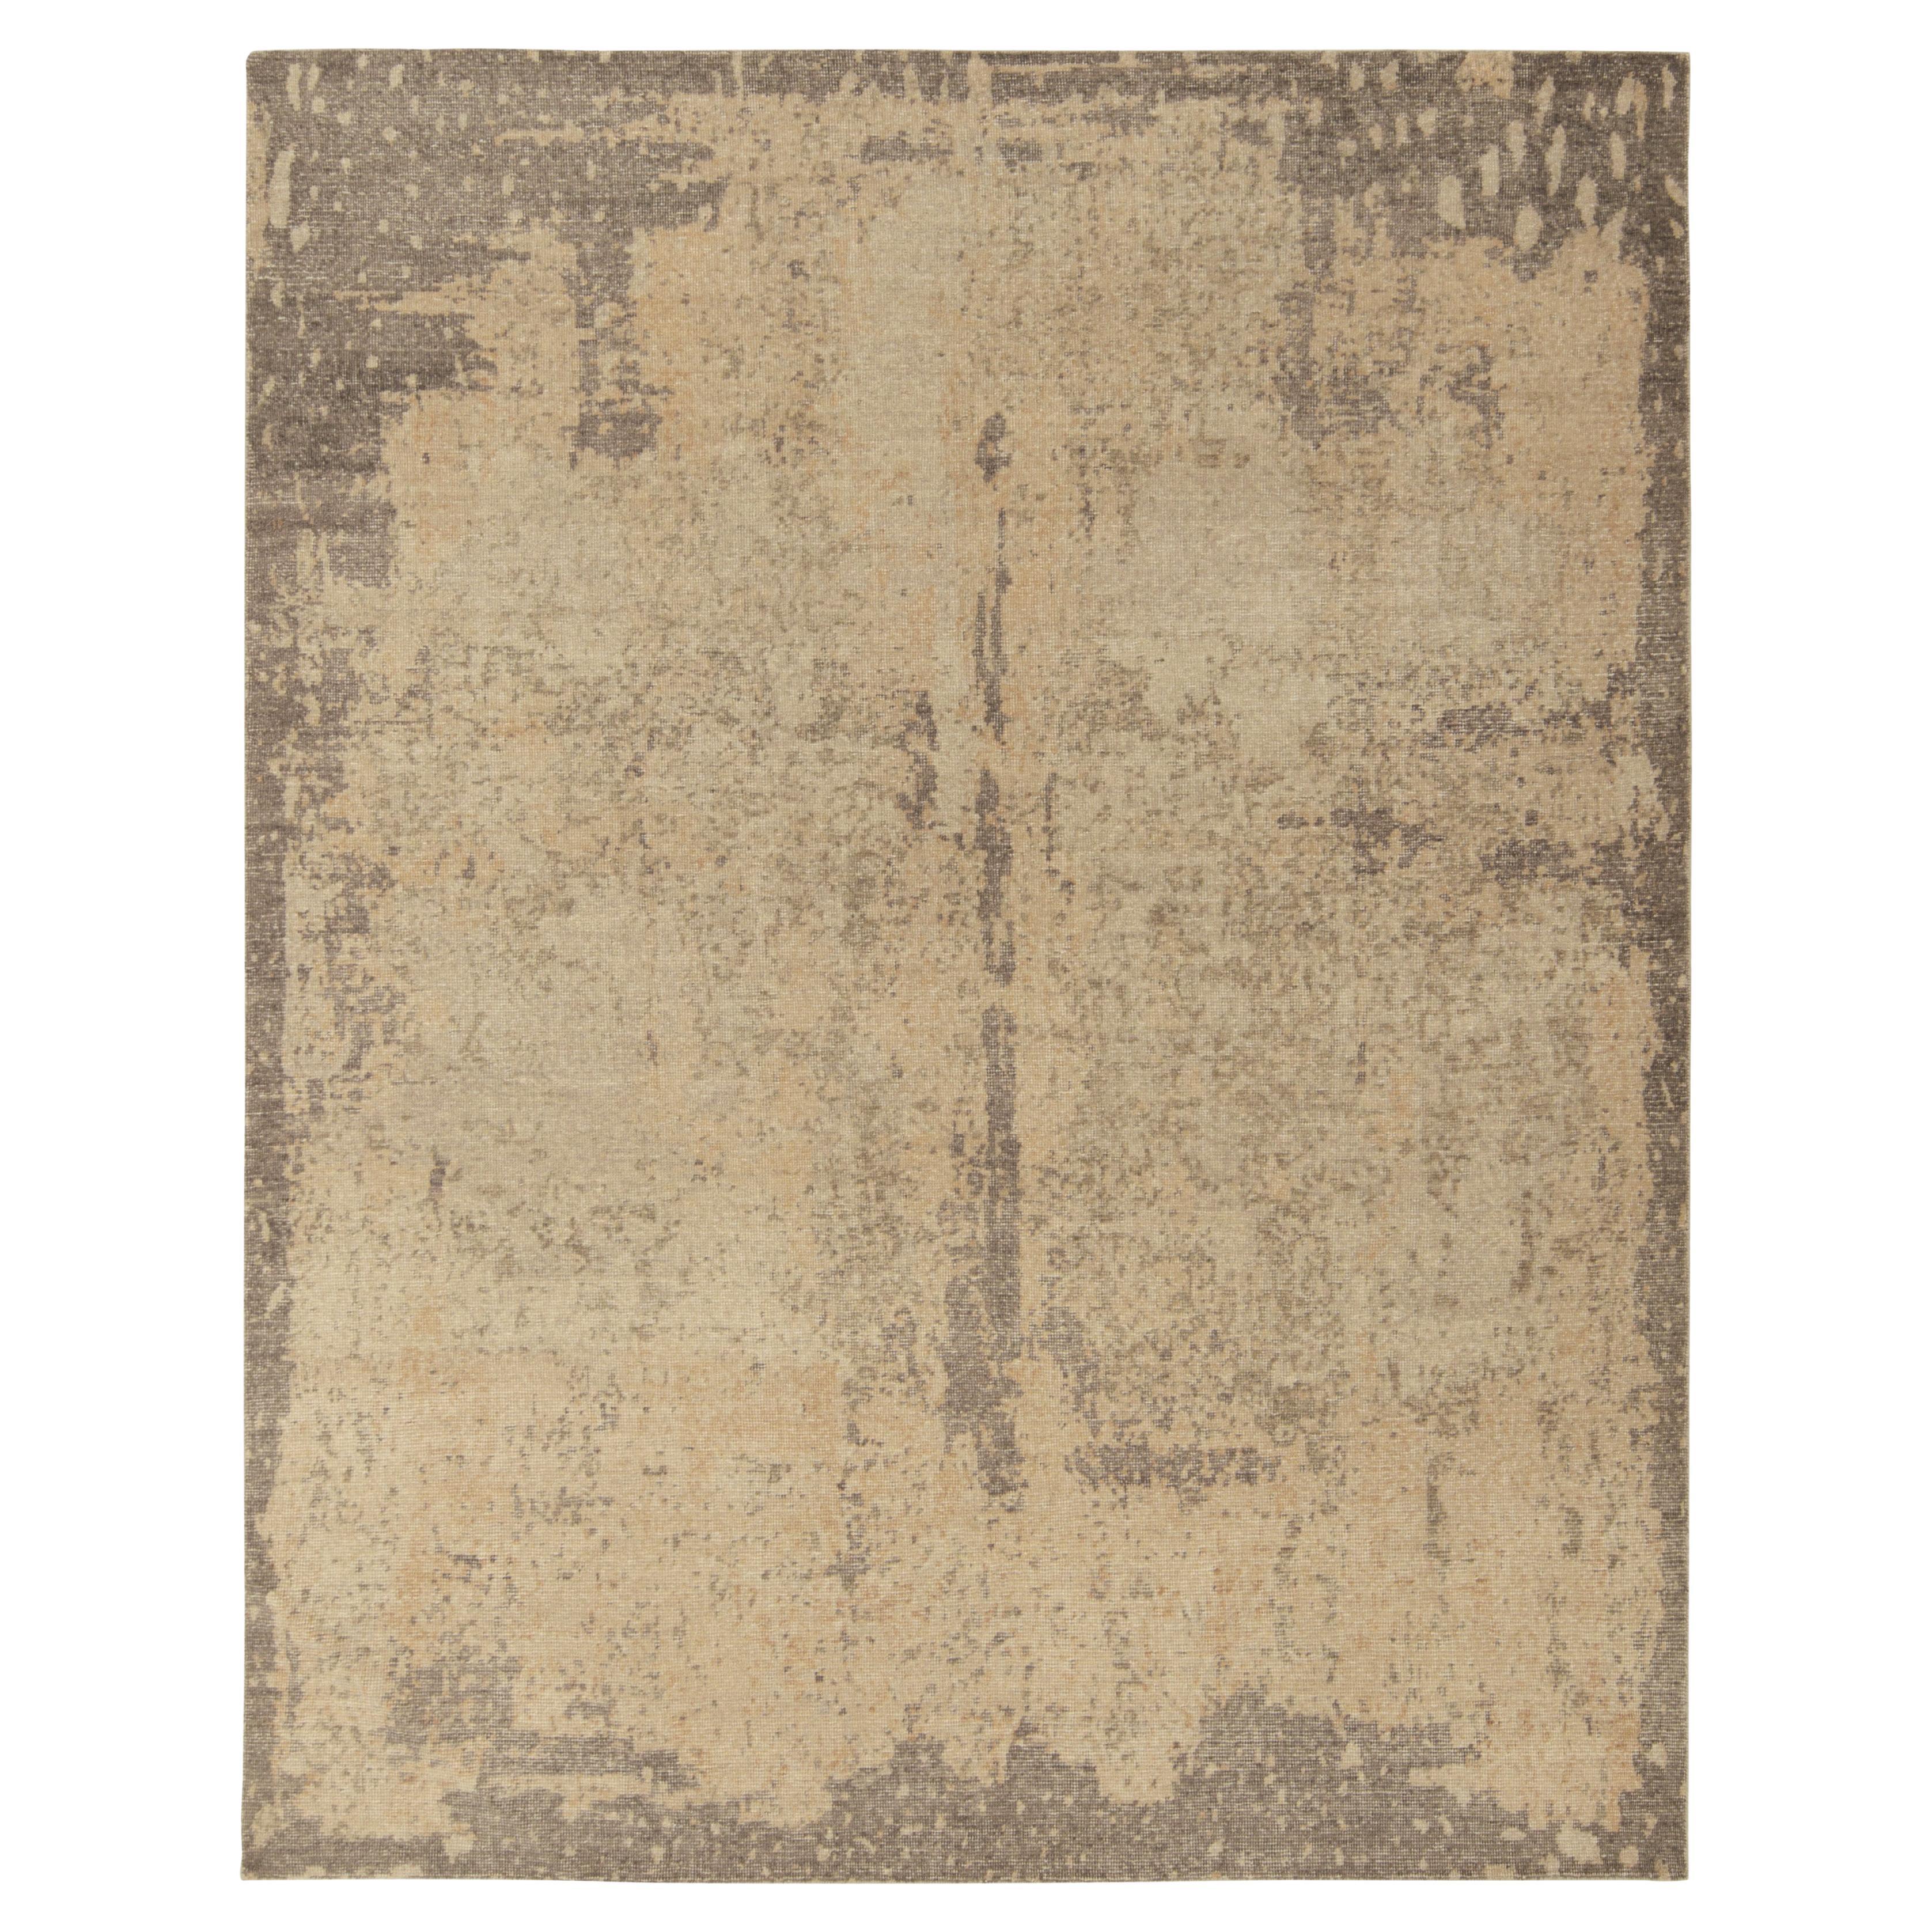 Moderner Teppich im Stil von Teppich & Kelim im Used-Stil mit beige-braunem abstraktem Muster